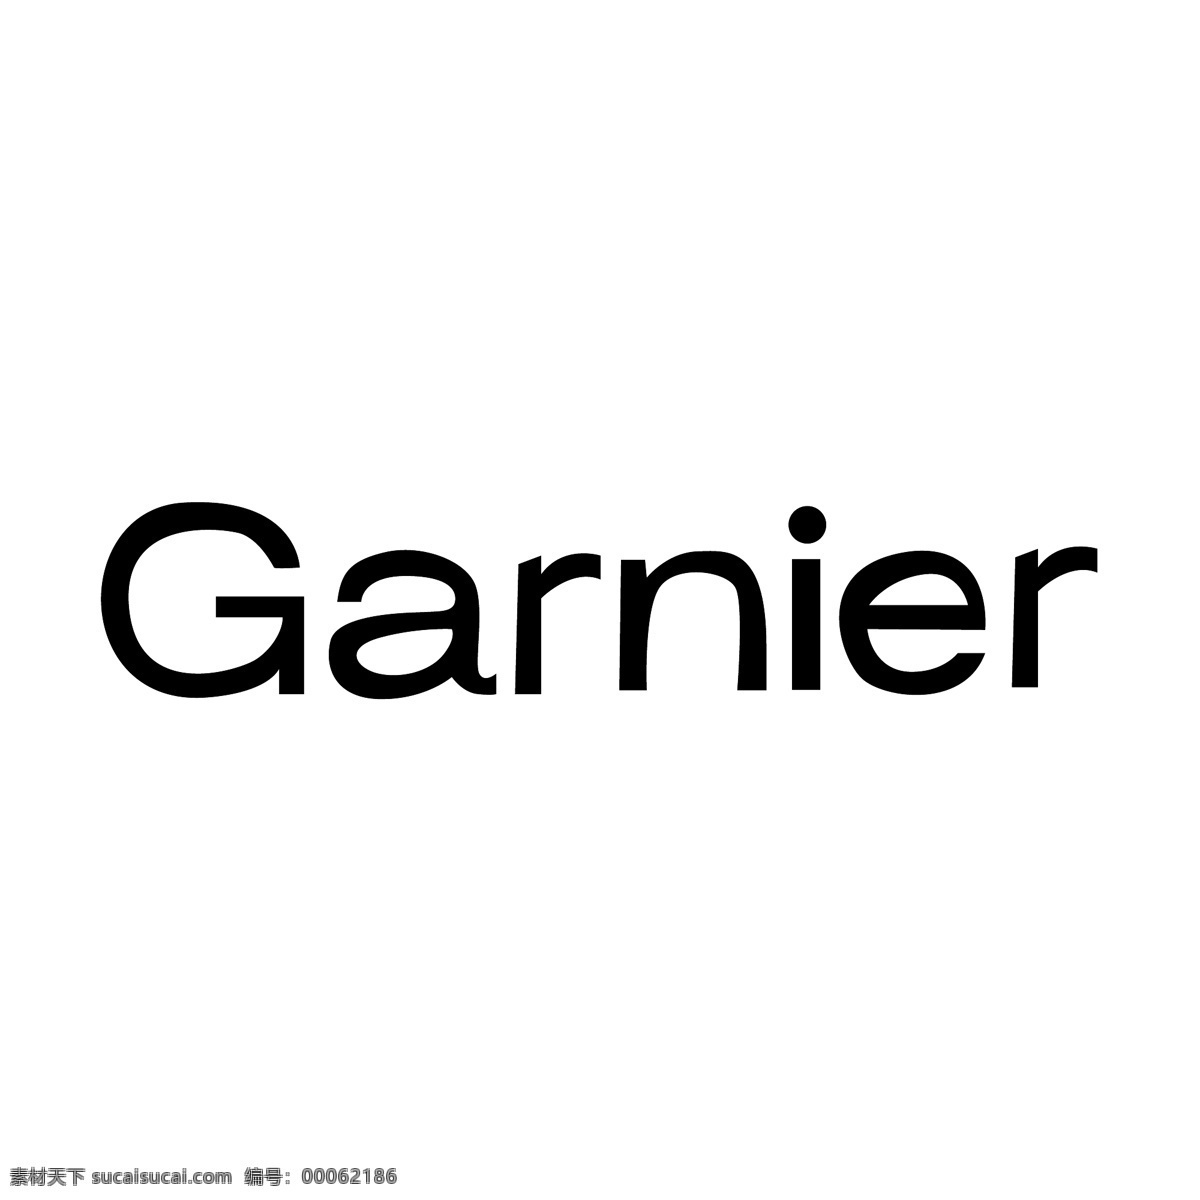 卡尼尔2 卡尼尔 卡 尼尔 标志 向量 的卡 卡尼尔eps 矢量 卡尼尔标志 格式 卡尼尔的载体 卡尼尔的 logo 矢量图 建筑家居